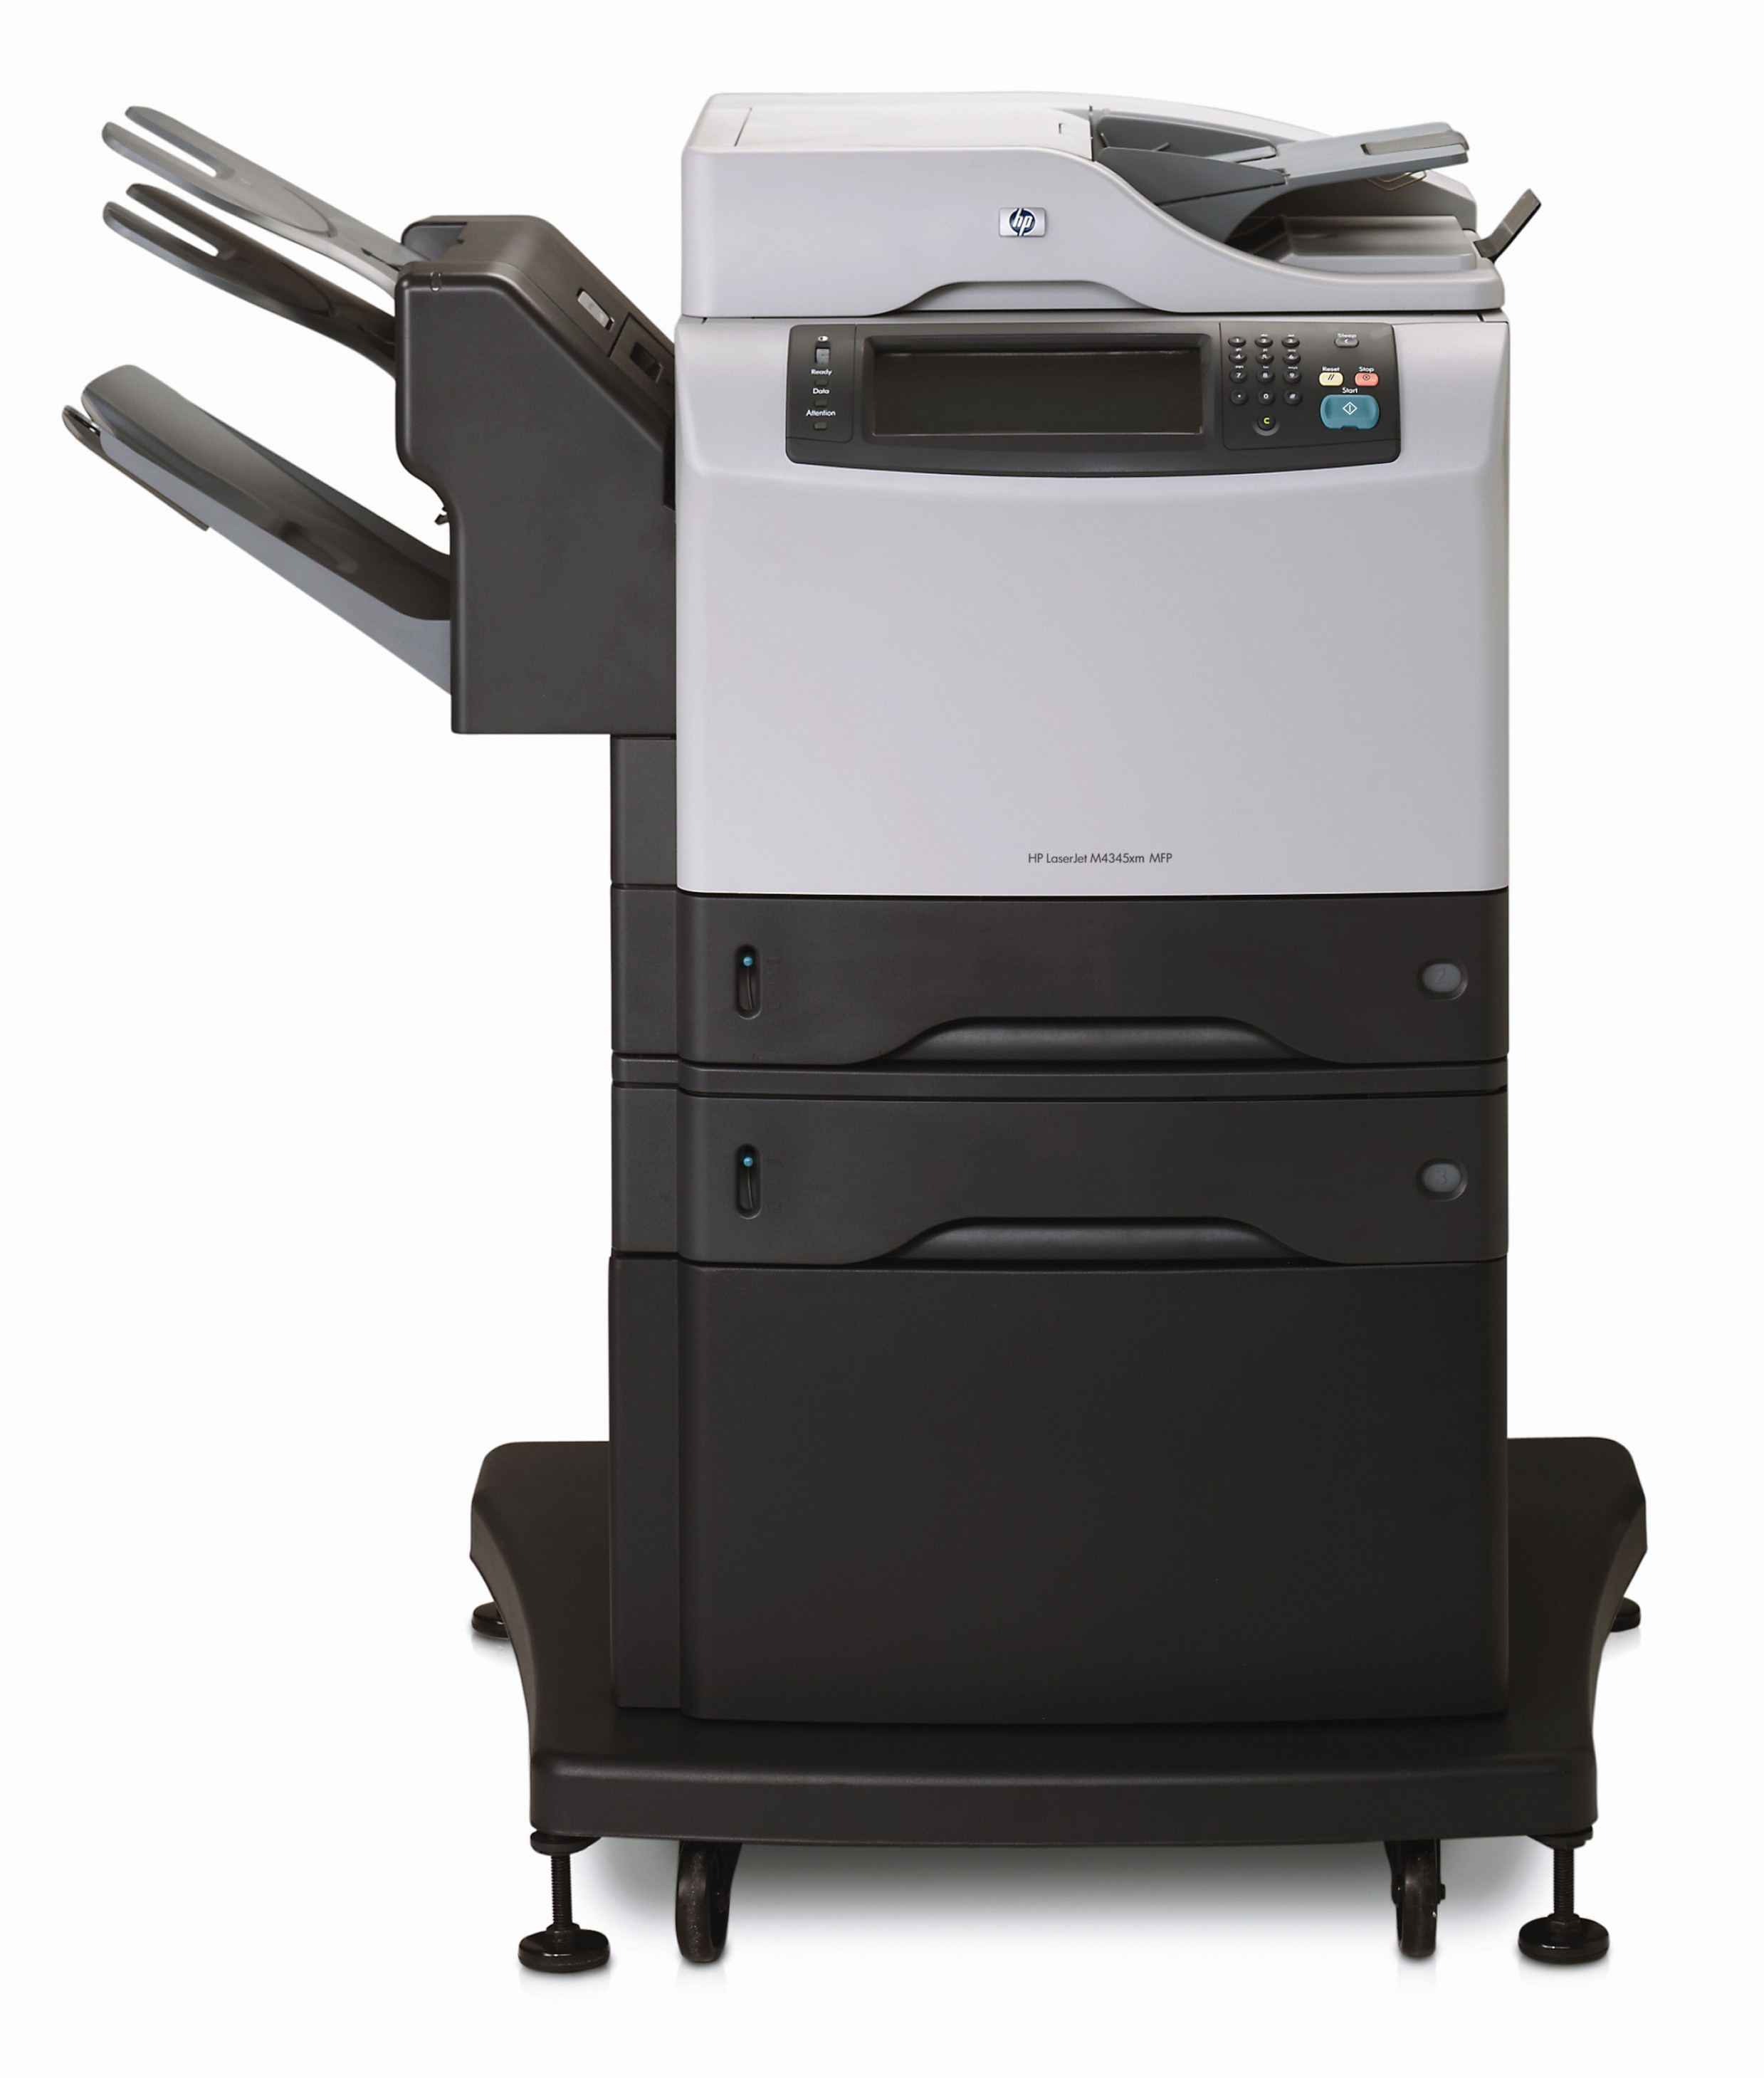  HP LaserJet 4345